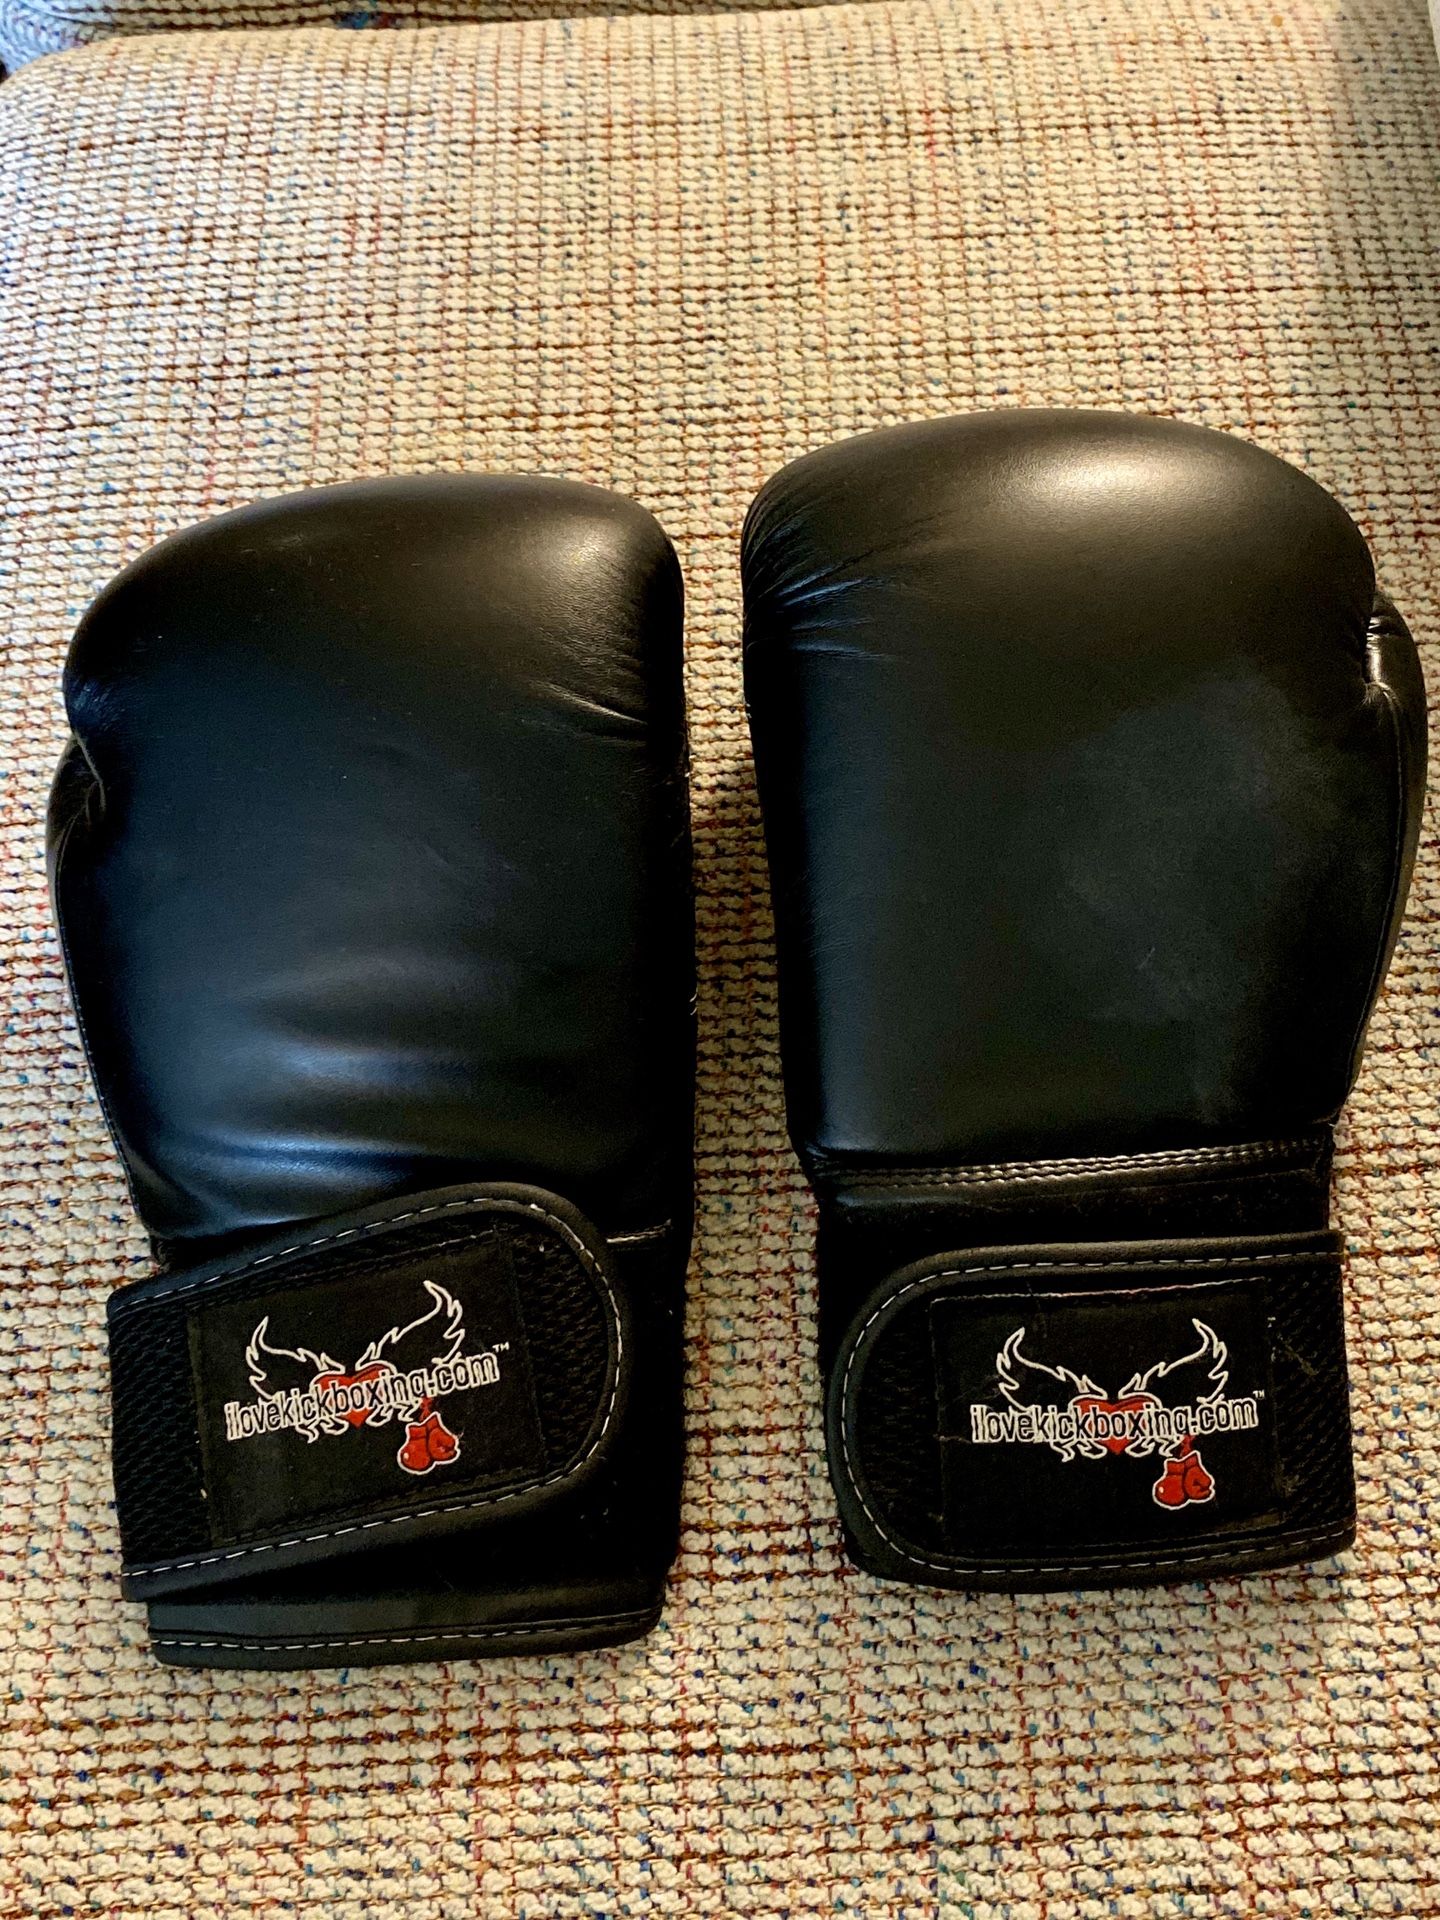 Kickboxing Pro Style Training Gloves - Black - 12oz